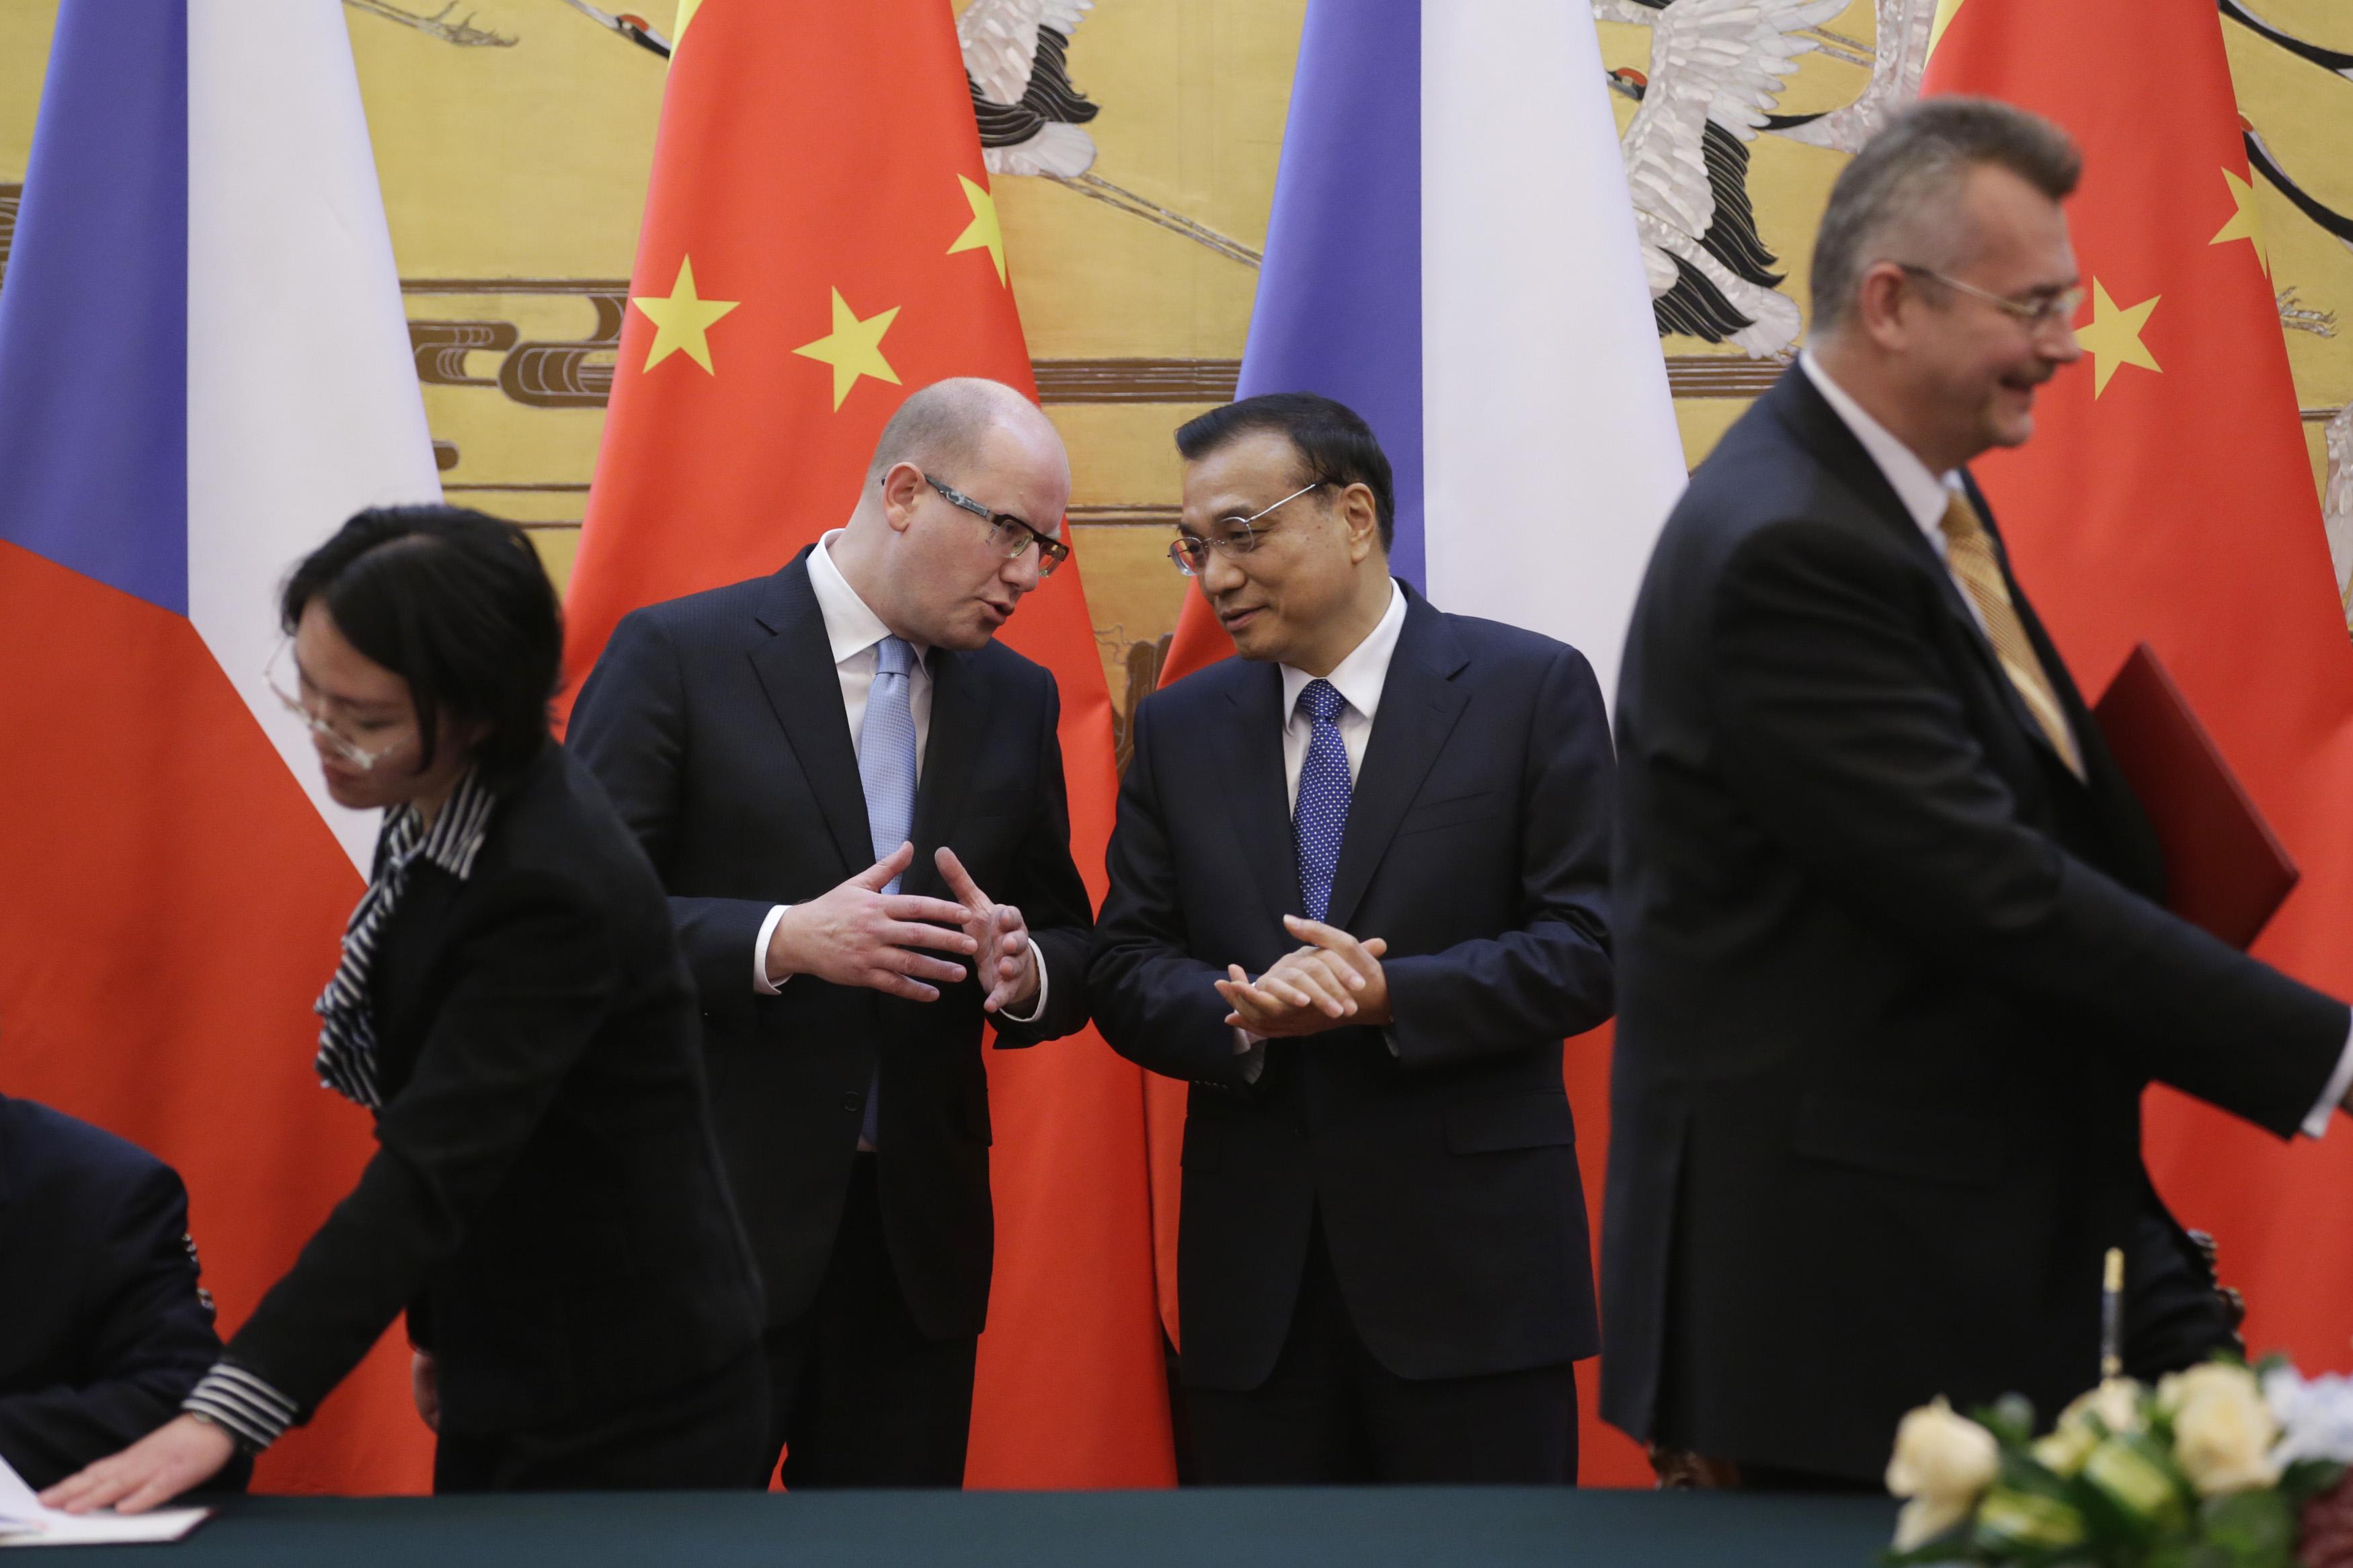 Den tjeckiske premiärministern Bohuslav Sobotka samtalar med Kinas Li Keqiang i Peking den 27 November, 2015. Kina öppnar dörrar till andra delar av världen bland annat Östeuropa. (Foto: Jason Lee /AFP/Getty Images)